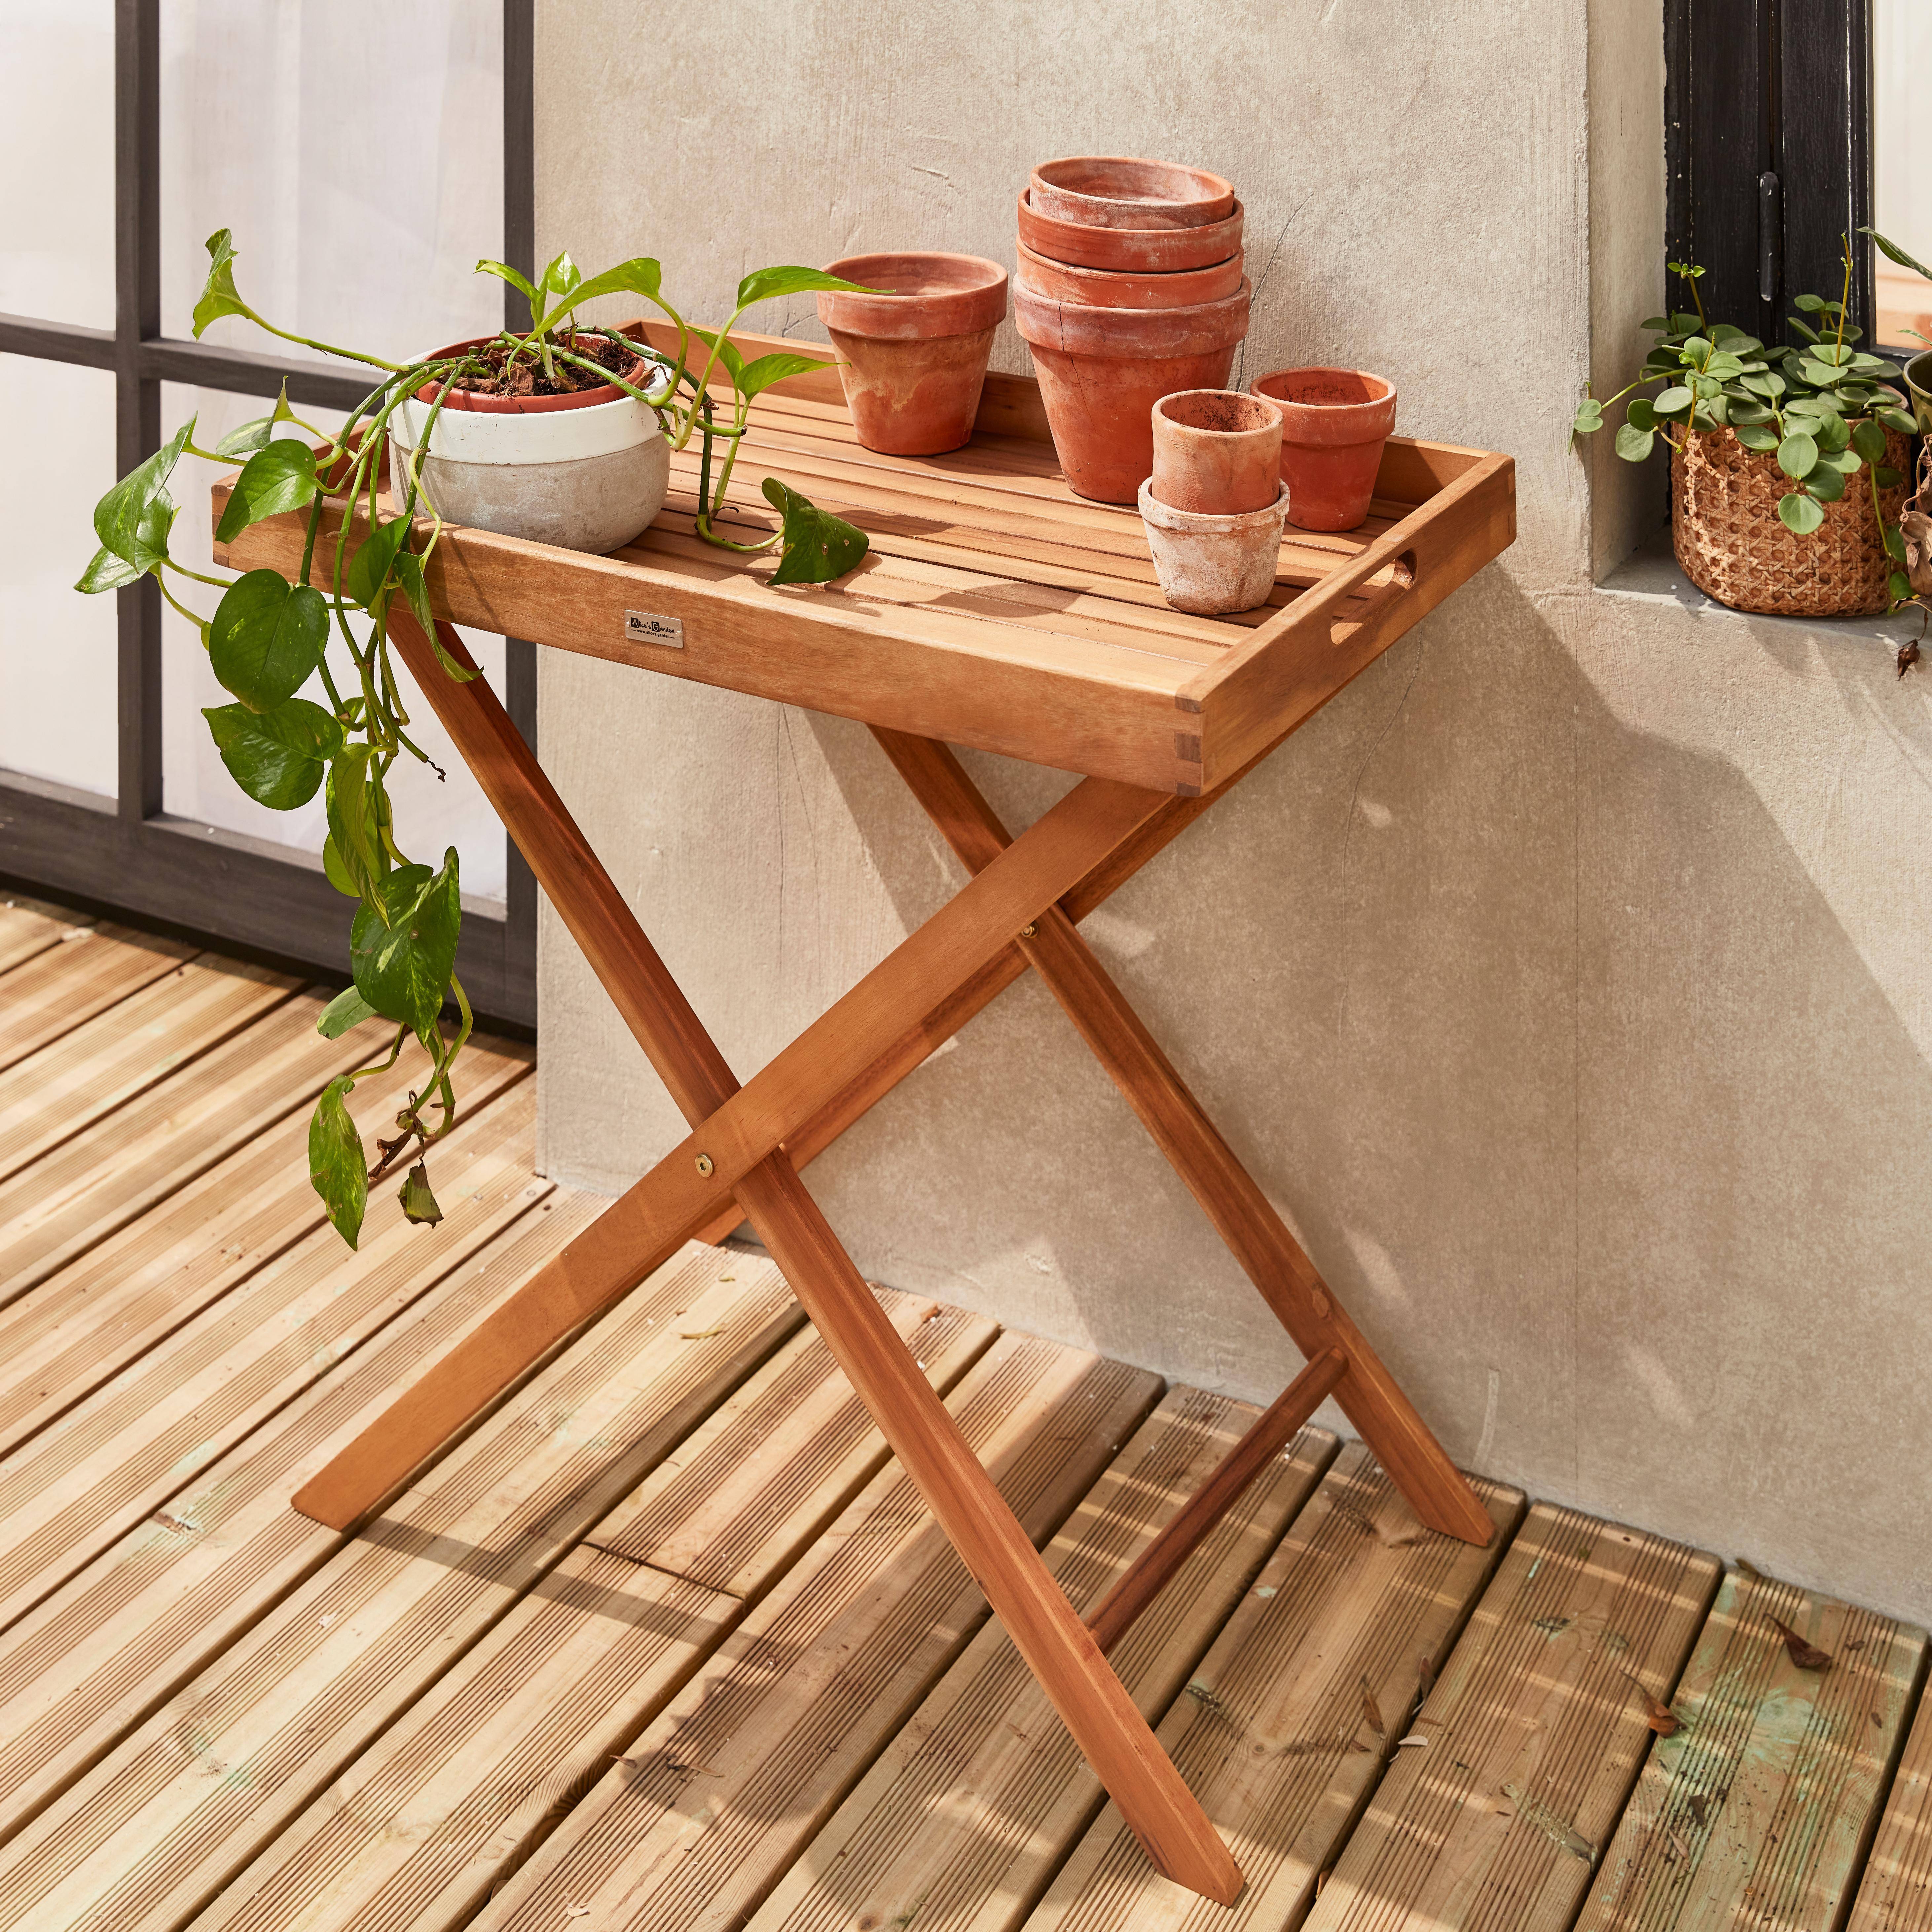 Tavolino da giardino, in legno, dimensioni: 68x44cm - modello: Murcia - Ripiano rimovibile su supporto, tavolo complementare, tavolino basso,sweeek,Photo1